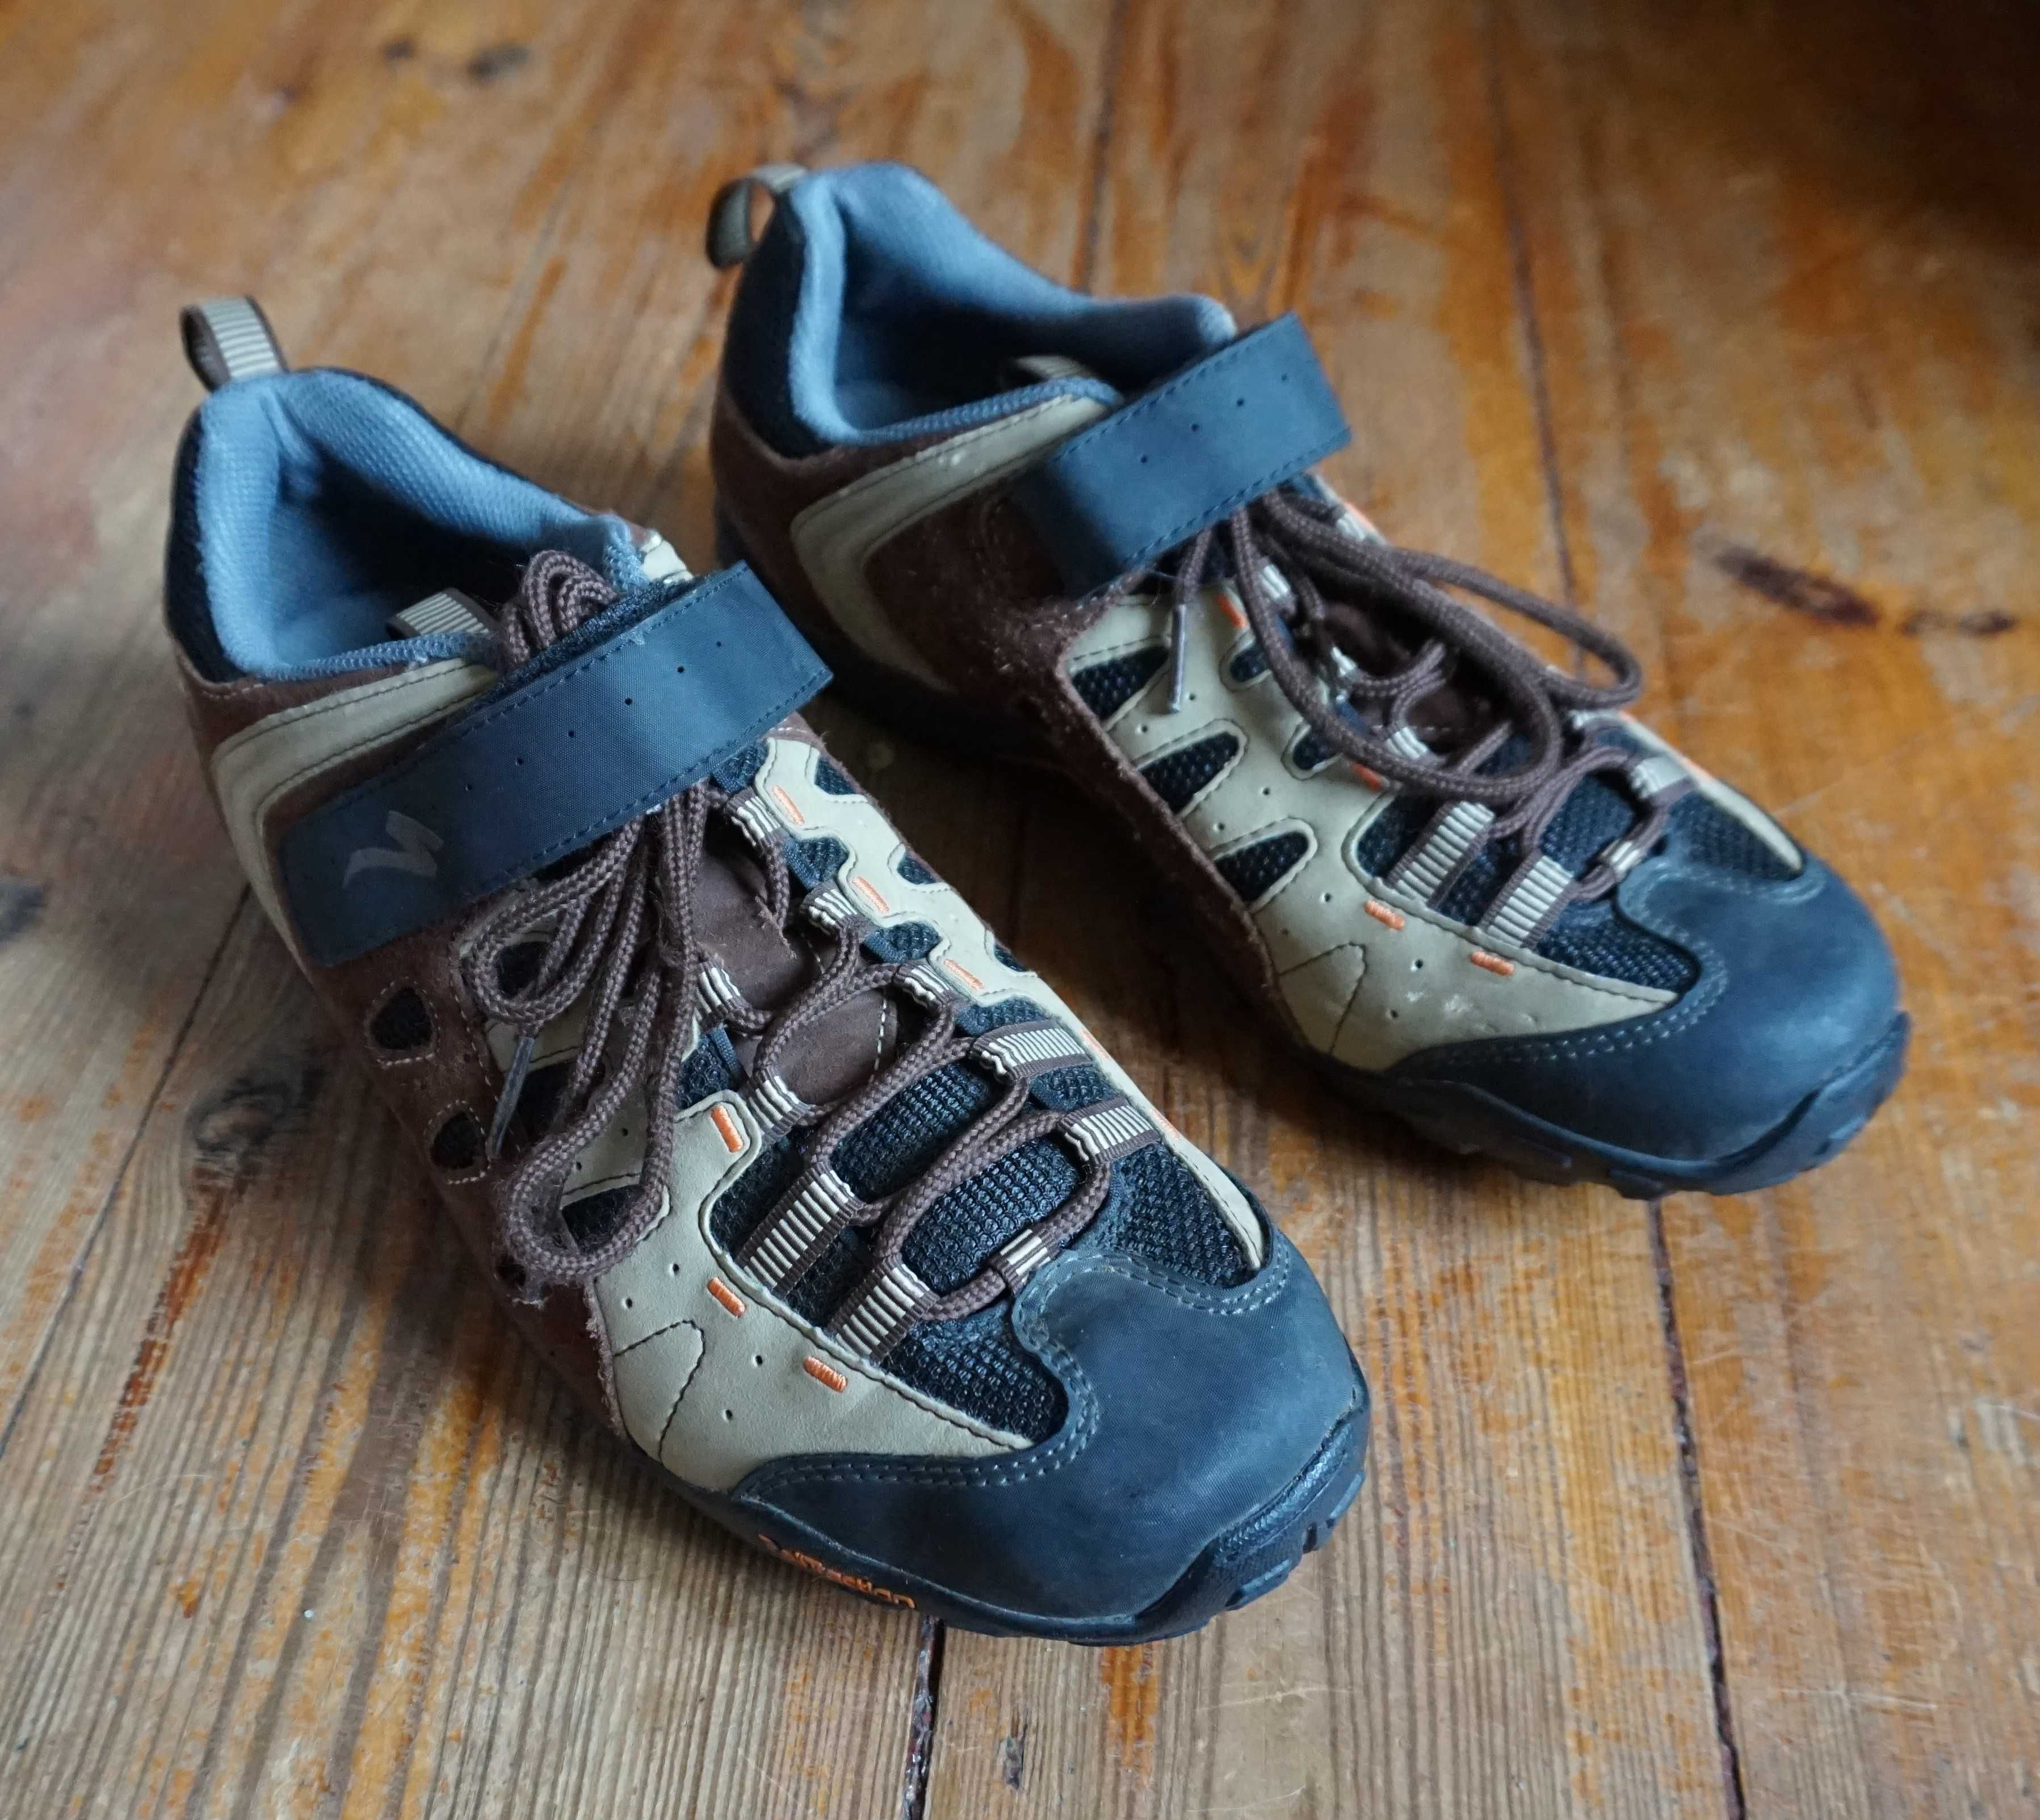 Specjalized buty SPD trekingowe roz.43 wkł.27,5cm z blokami